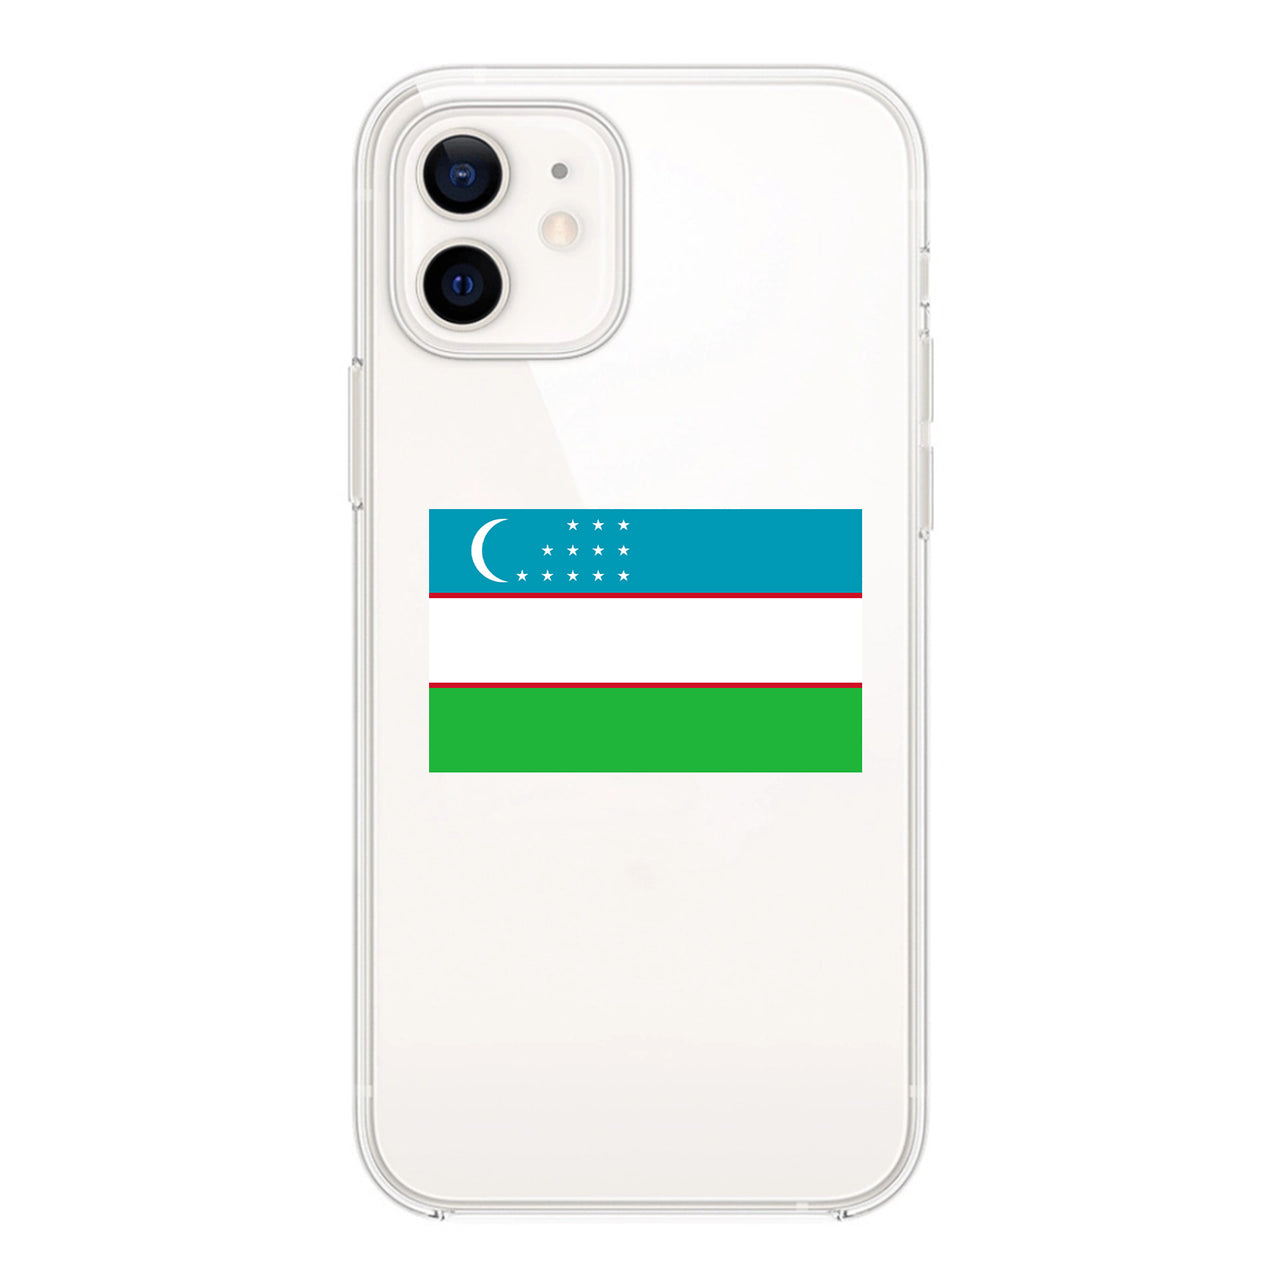 Uzbekistan Designed Transparent Silicone iPhone Cases